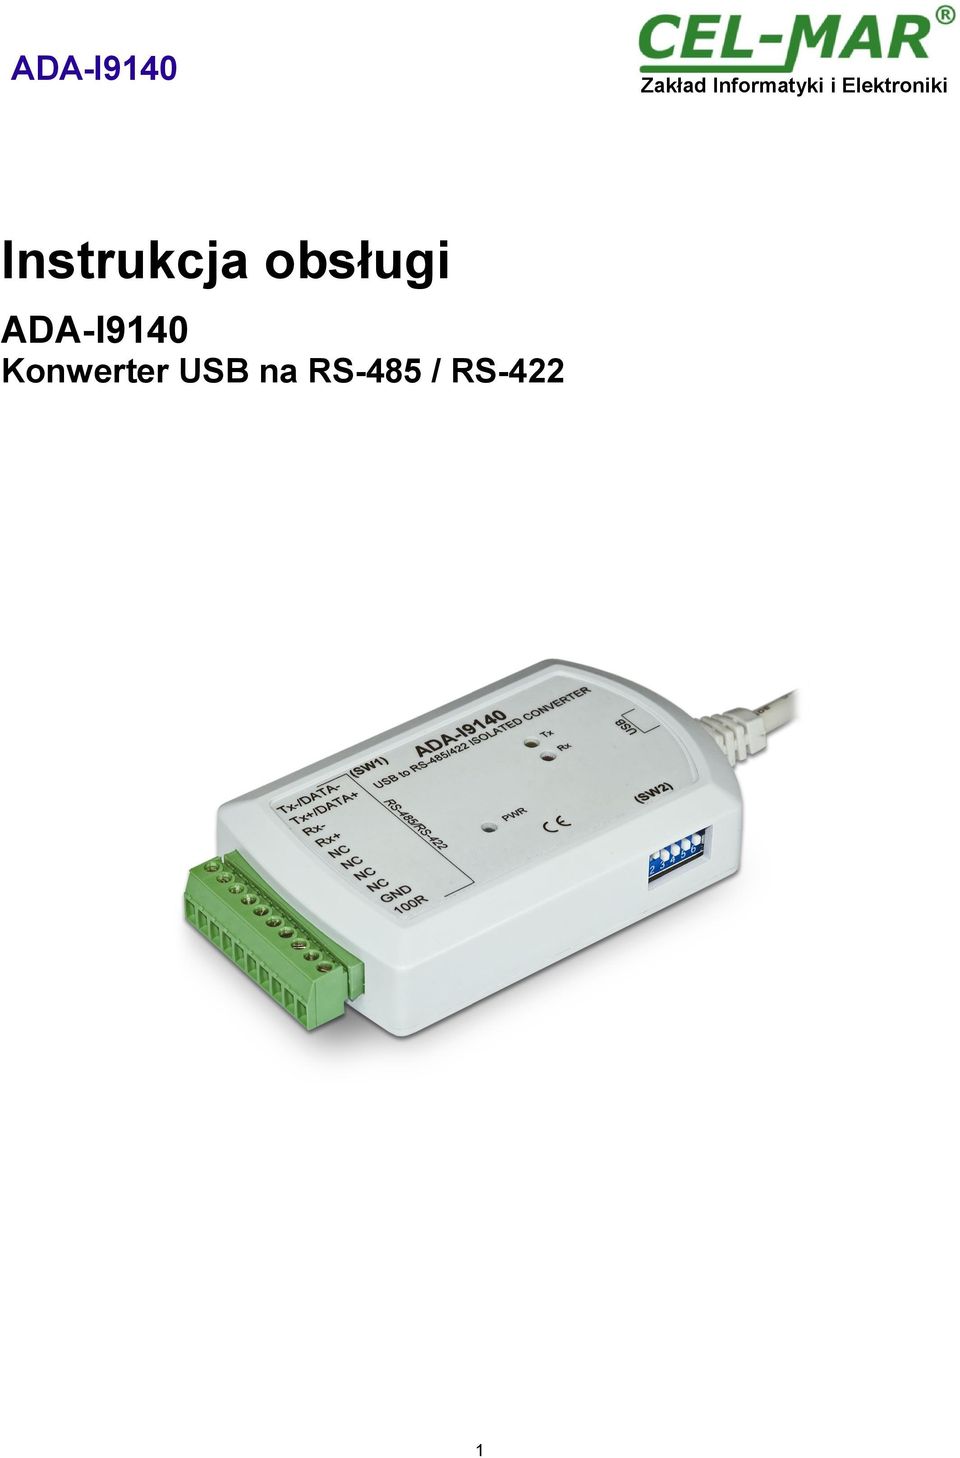 ADA-I9140